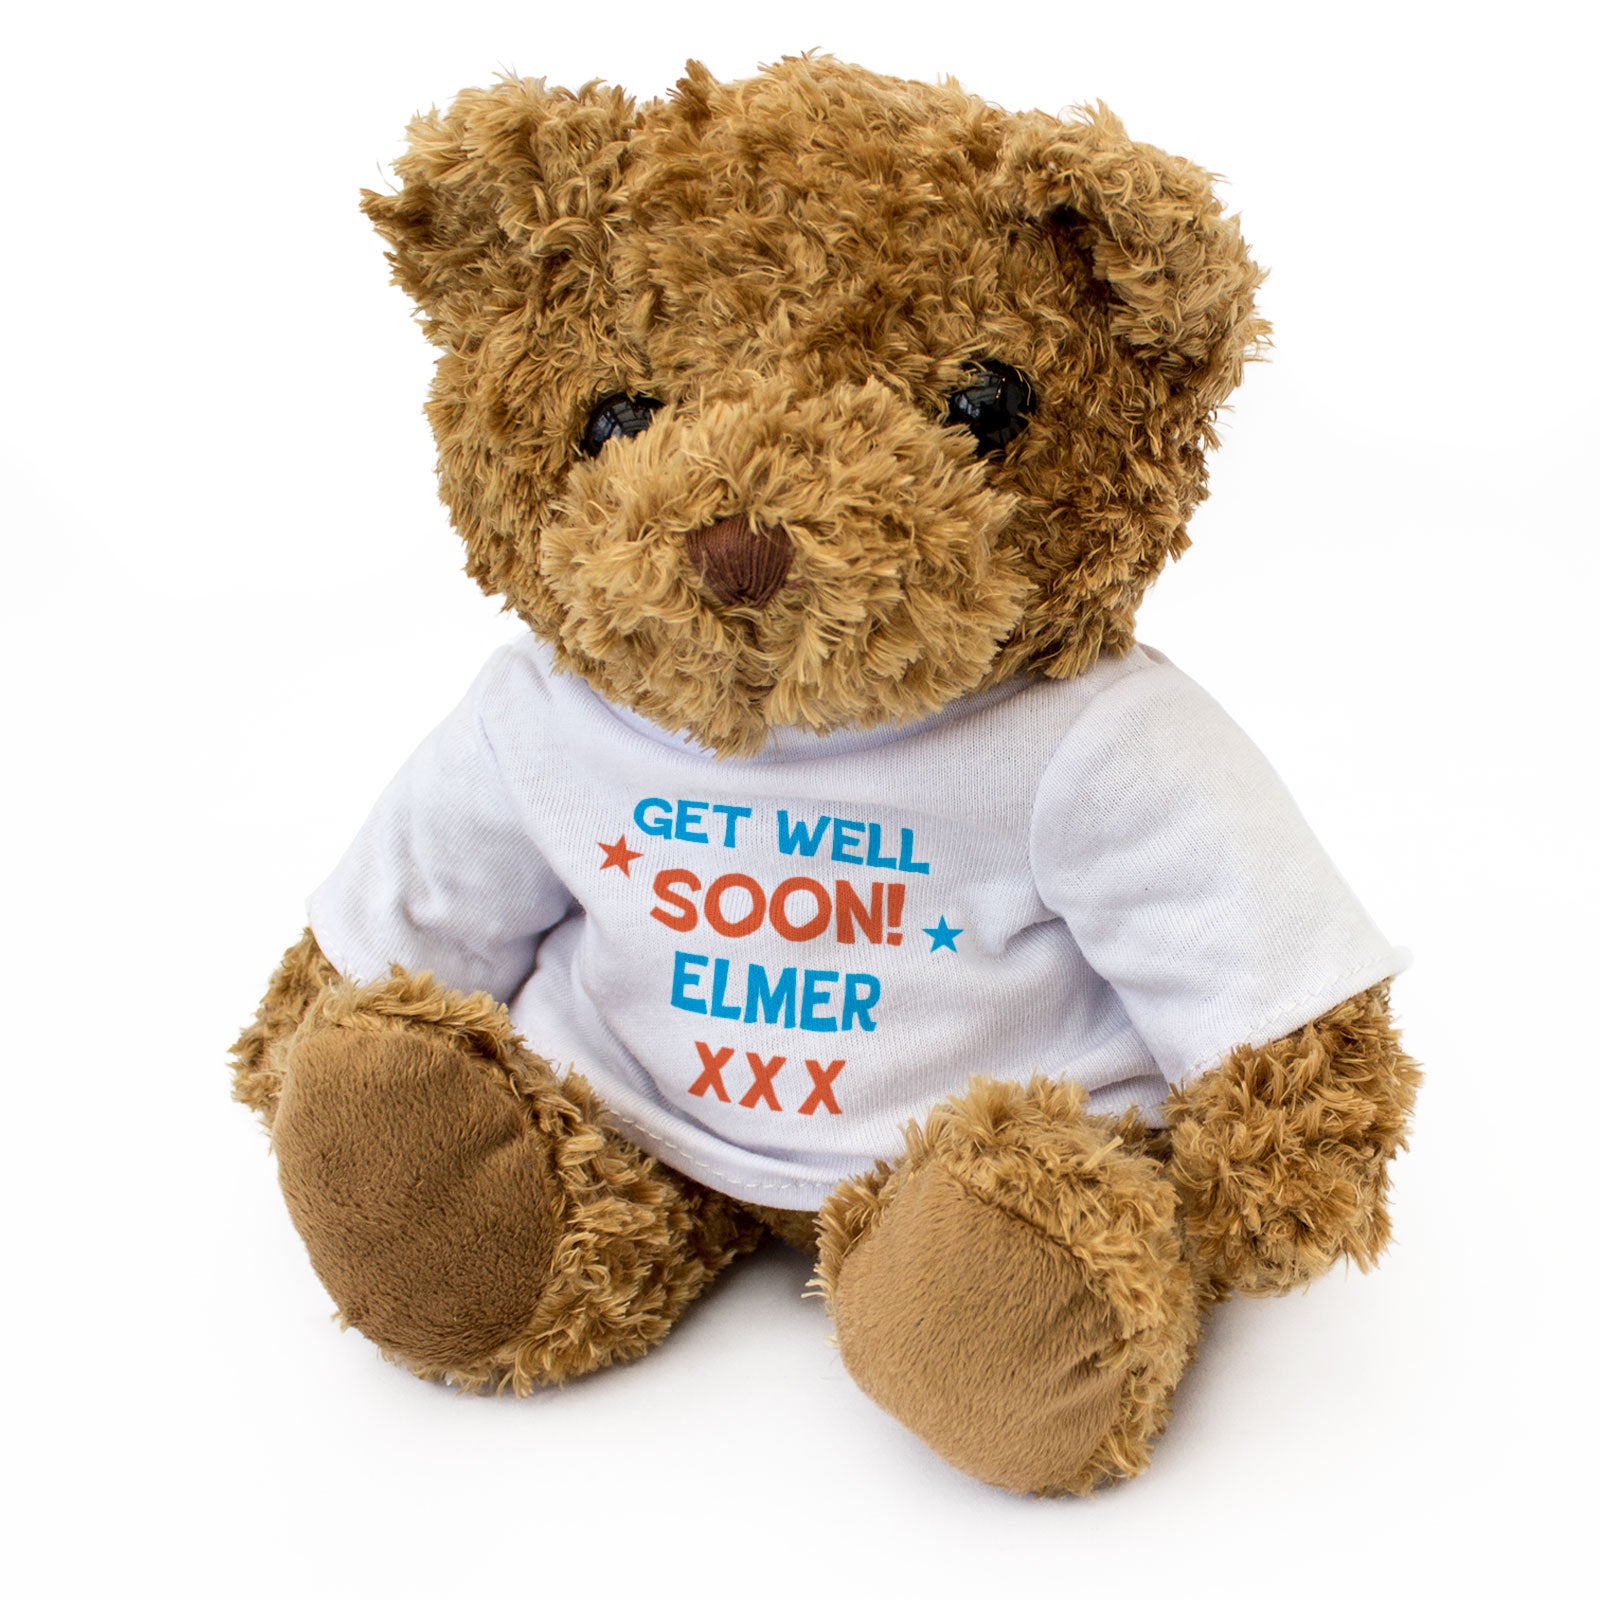 Get Well Soon Elmer - Teddy Bear